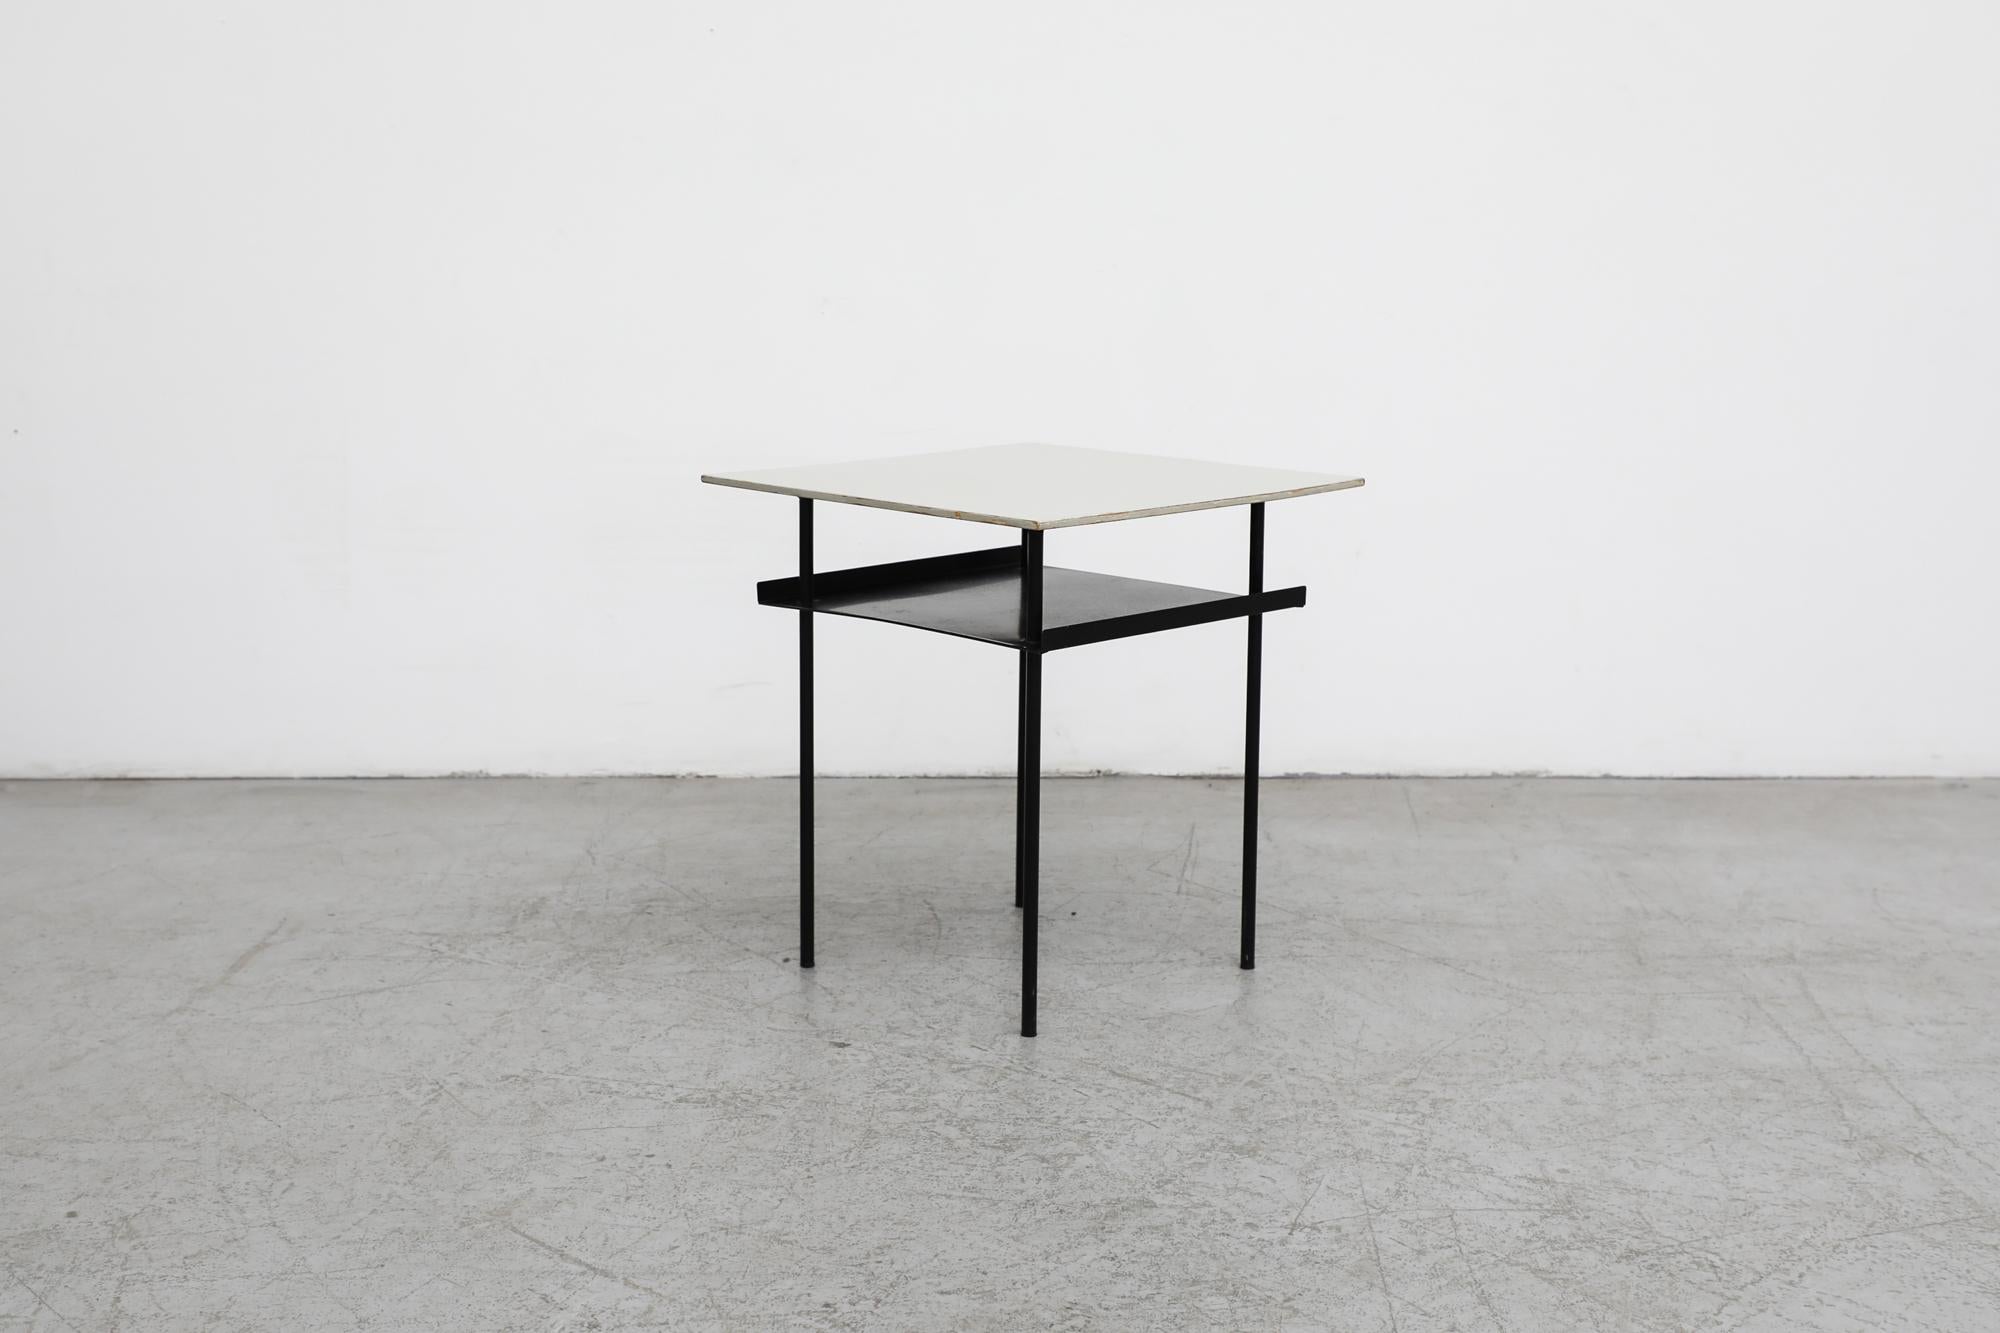 Émaillé Table d'appoint ou de chevet Rietveld de style Bauhaus avec pieds noirs et plateau en métal gris